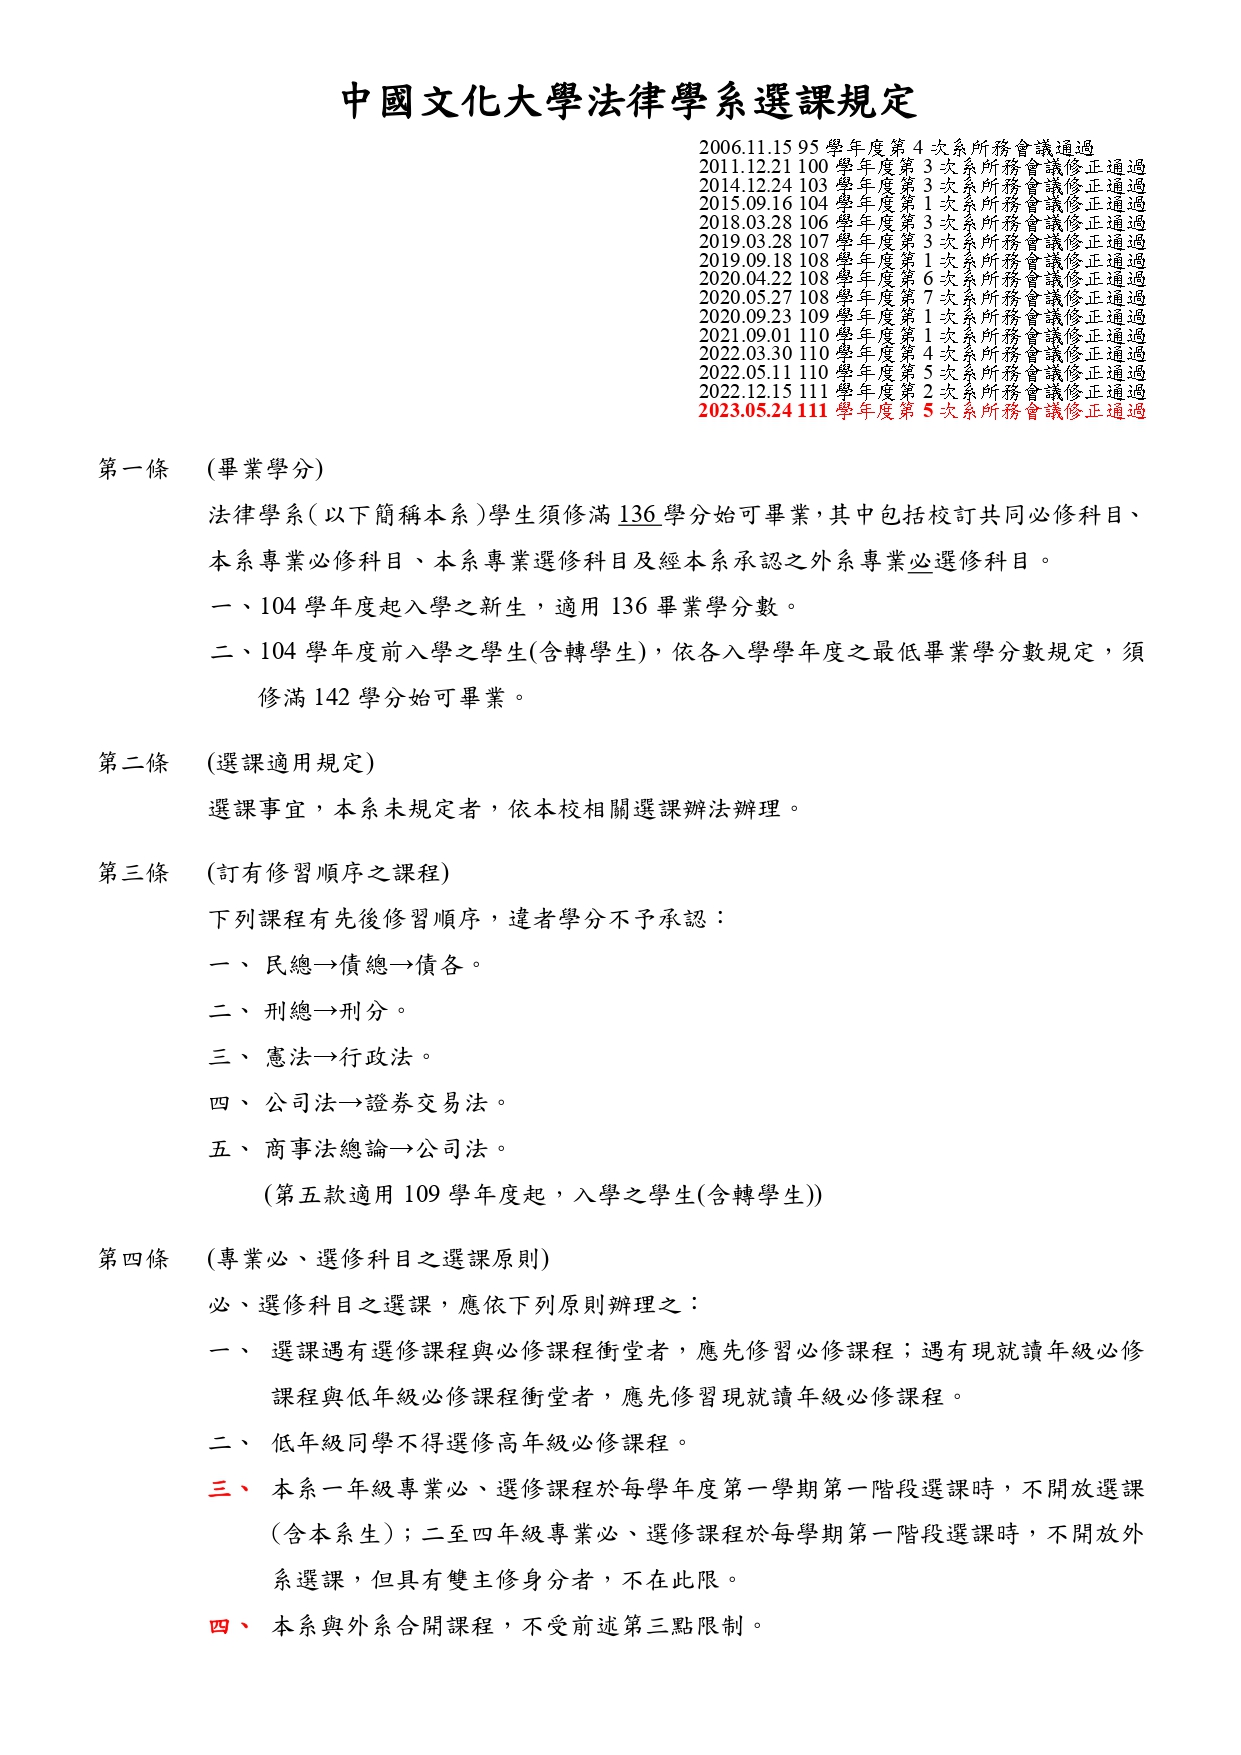 中國文化大學法律學系選課規定112.05.24 page 0001